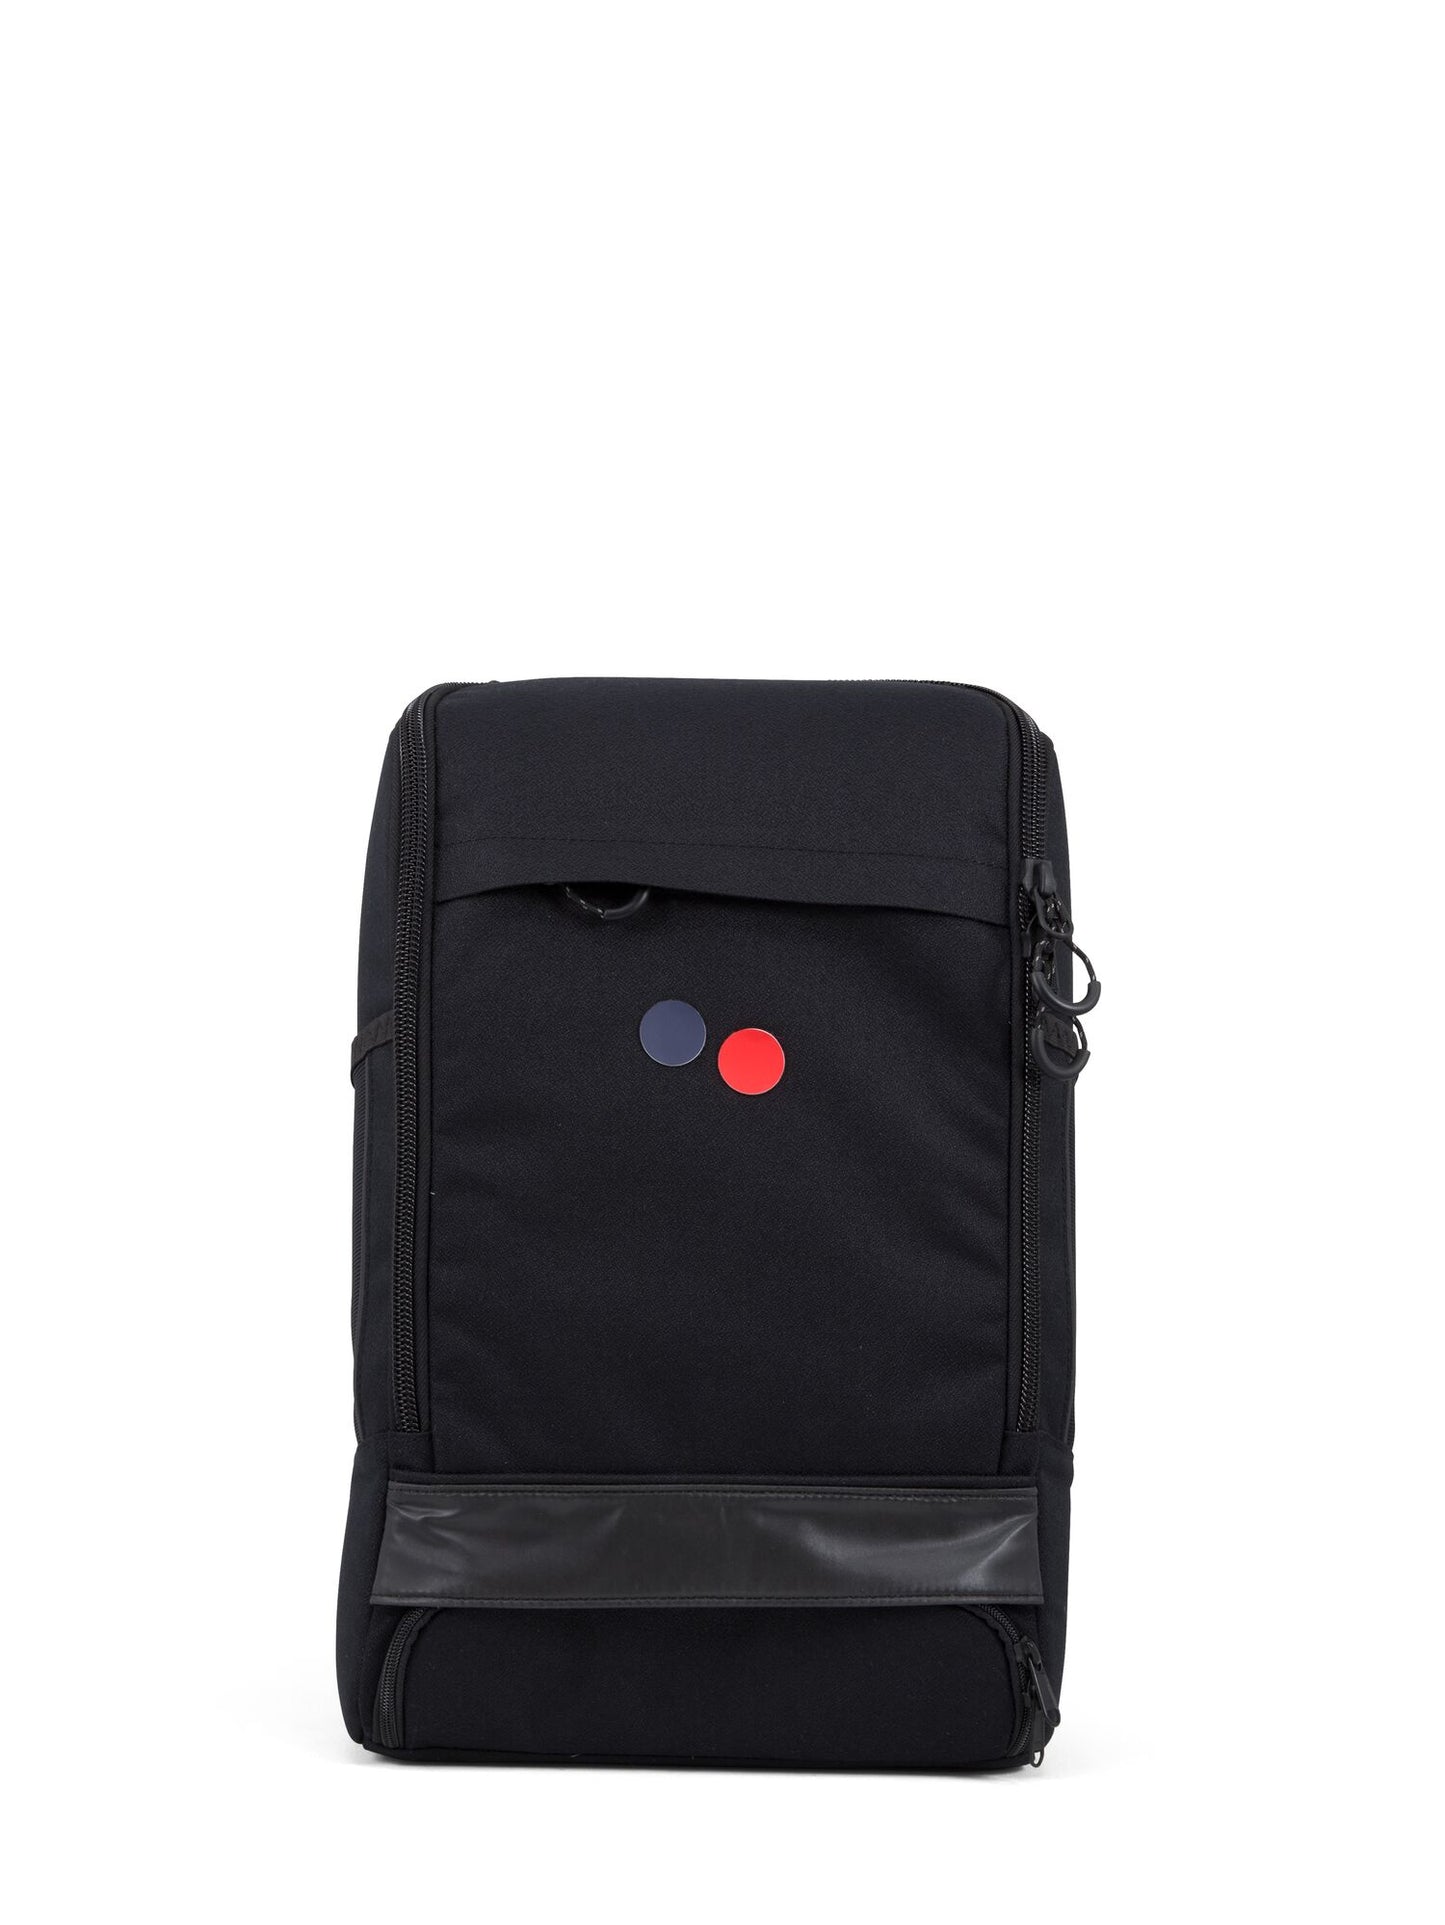 pinqponq-backpack-Cubik-Medium-Licorice-Black-front